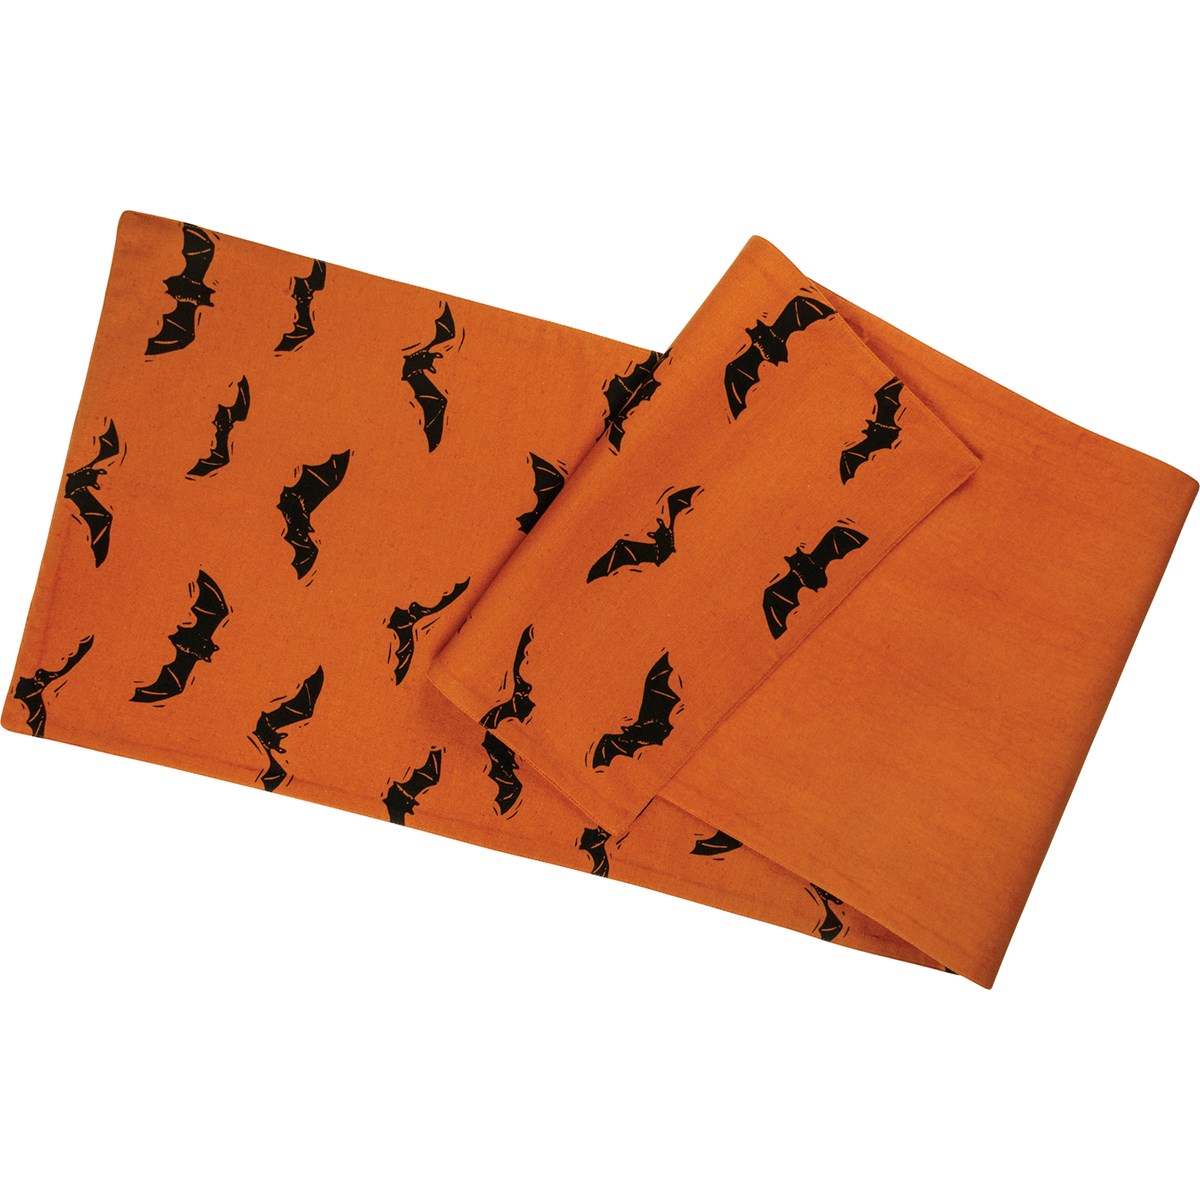 Bats Table Runner - Cotton, Linen